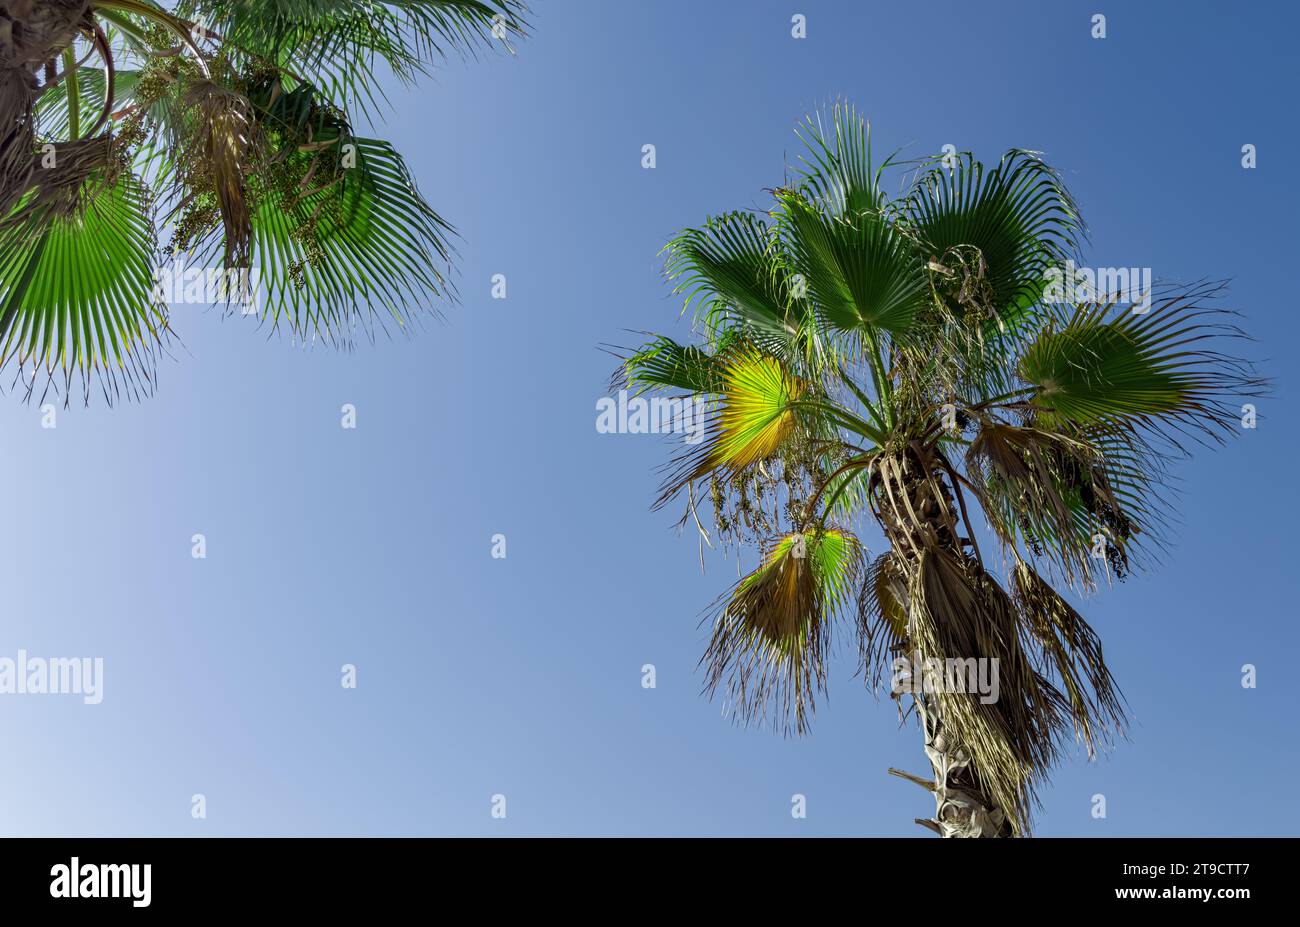 Feuilles de palmier, feuille verte, tronc, vue de bas en haut, ciel bleu Banque D'Images